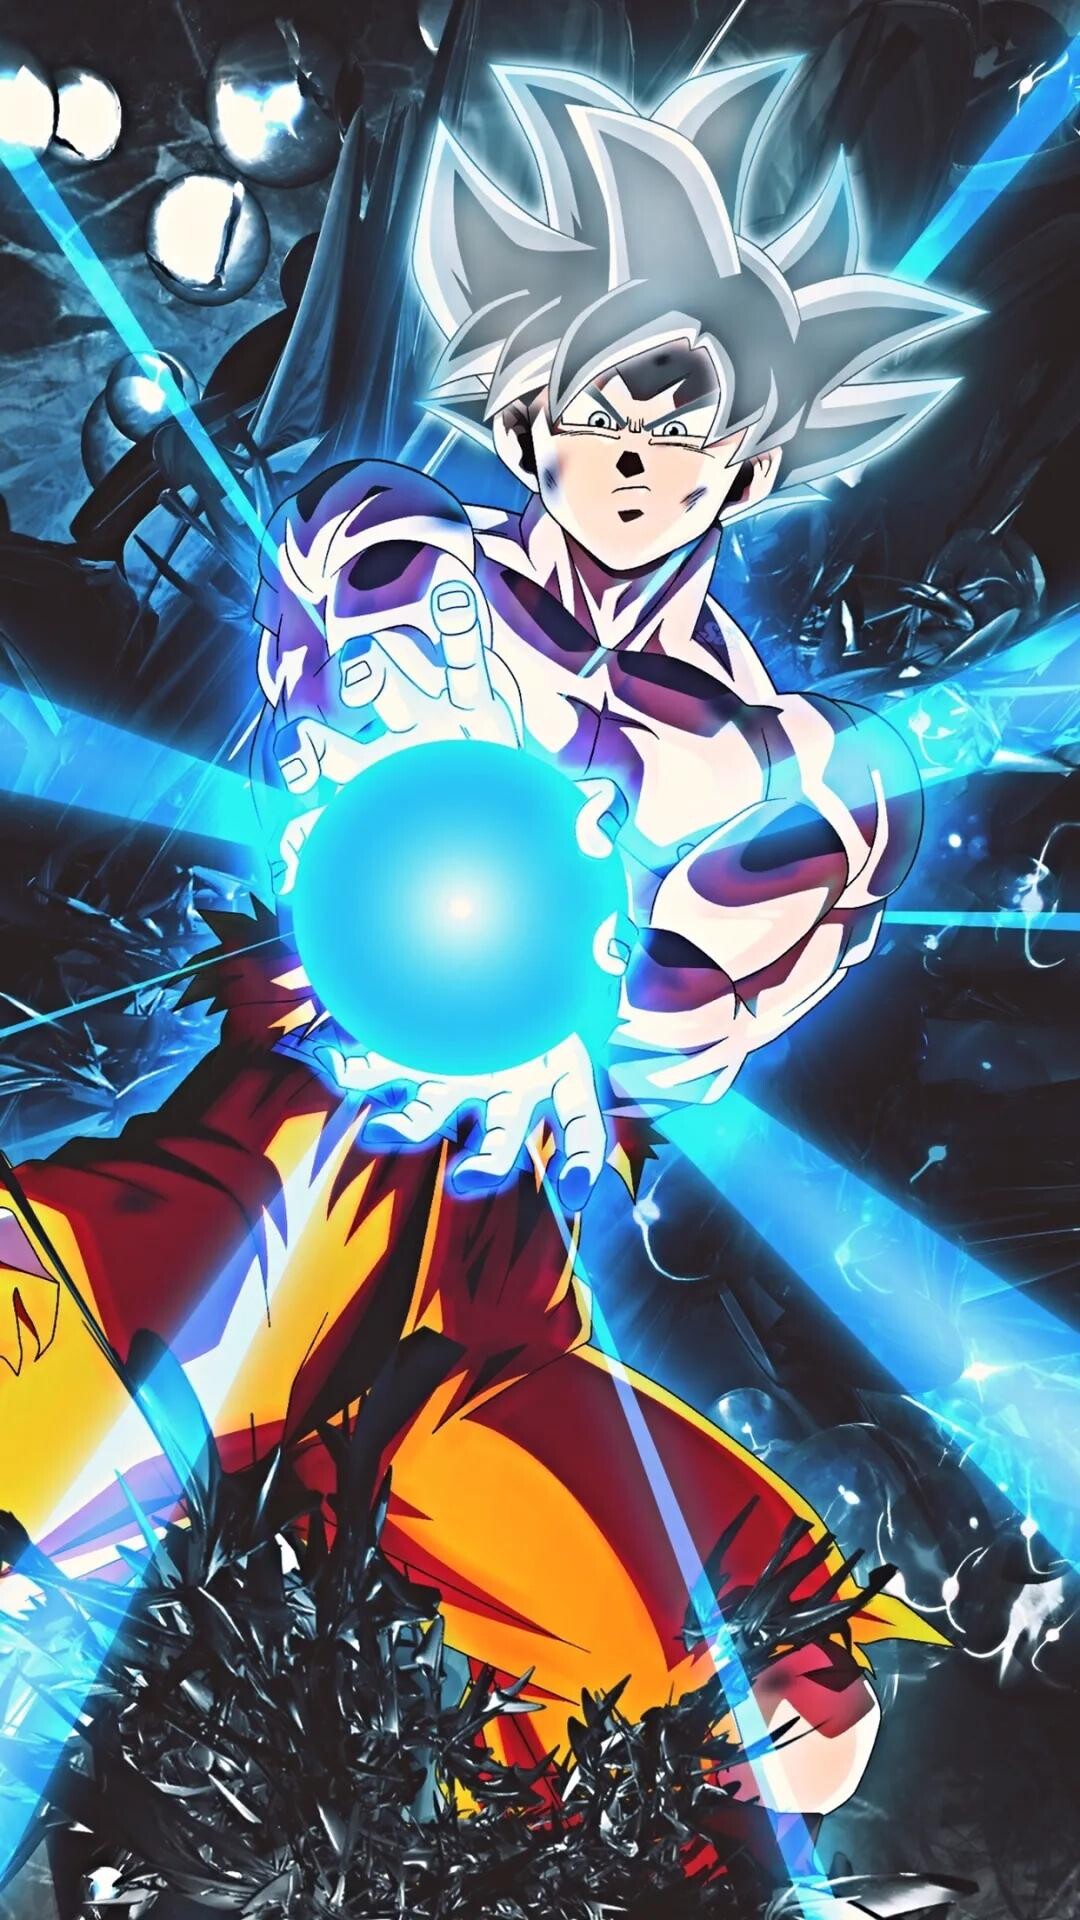 Goku Kamehameha: Energy blast created in the anime/manga Dragon Ball, Created by Master Roshi. 1080x1920 Full HD Background.